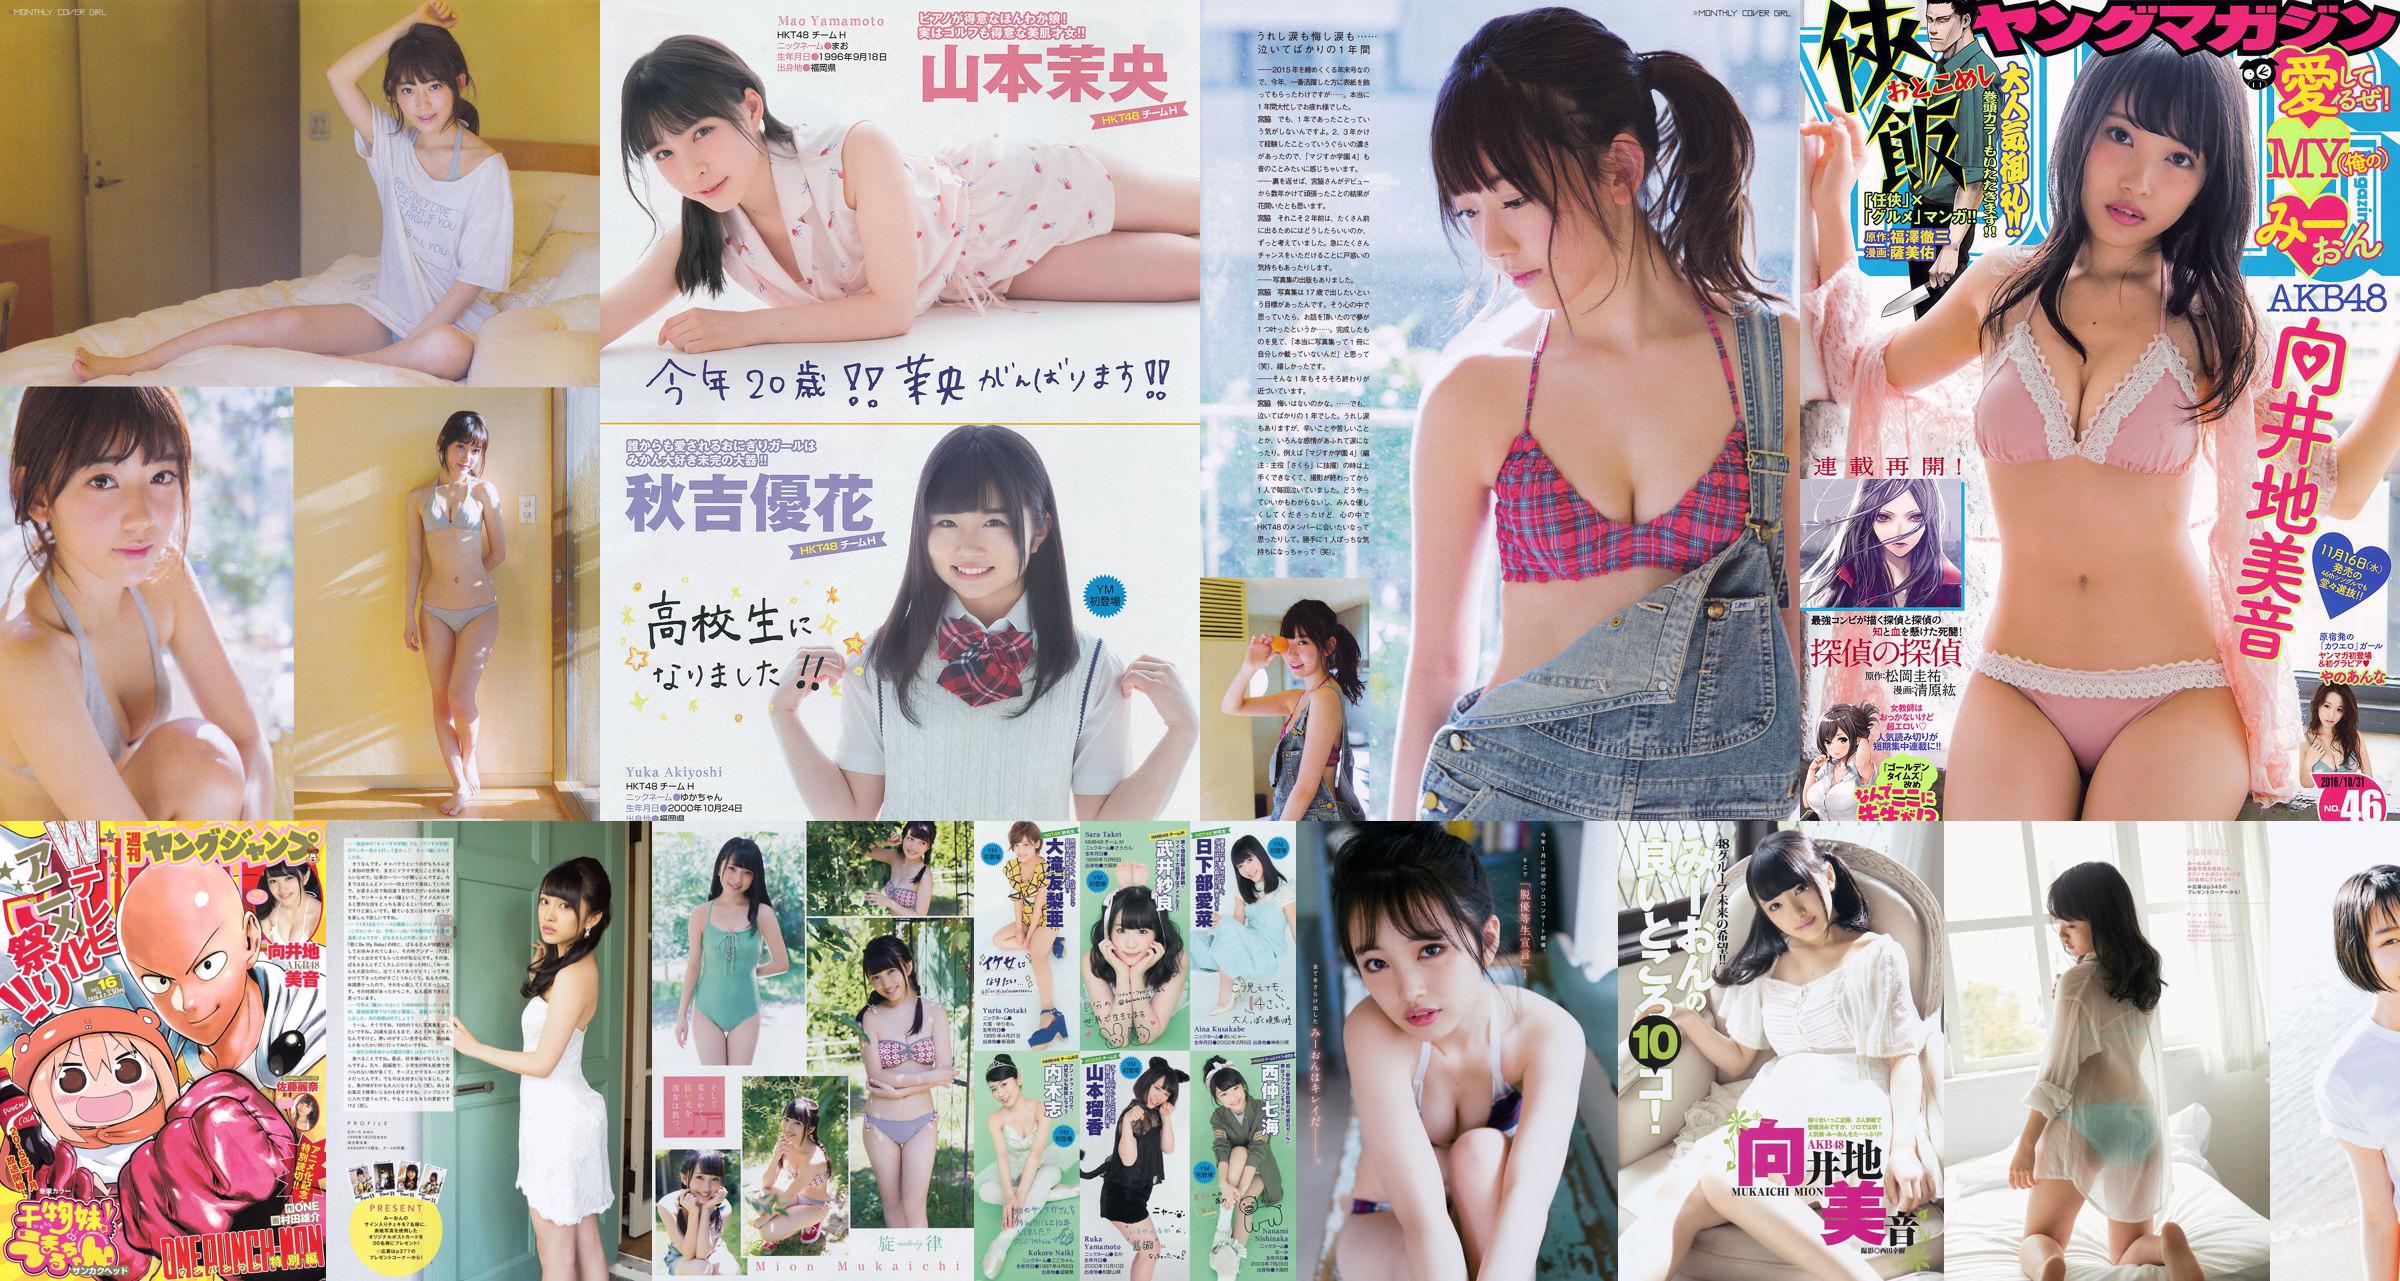 [Young Magazine] Mion Mukaichi Rin Kaname 2017 Nr. 24 Foto No.1cc811 Seite 3